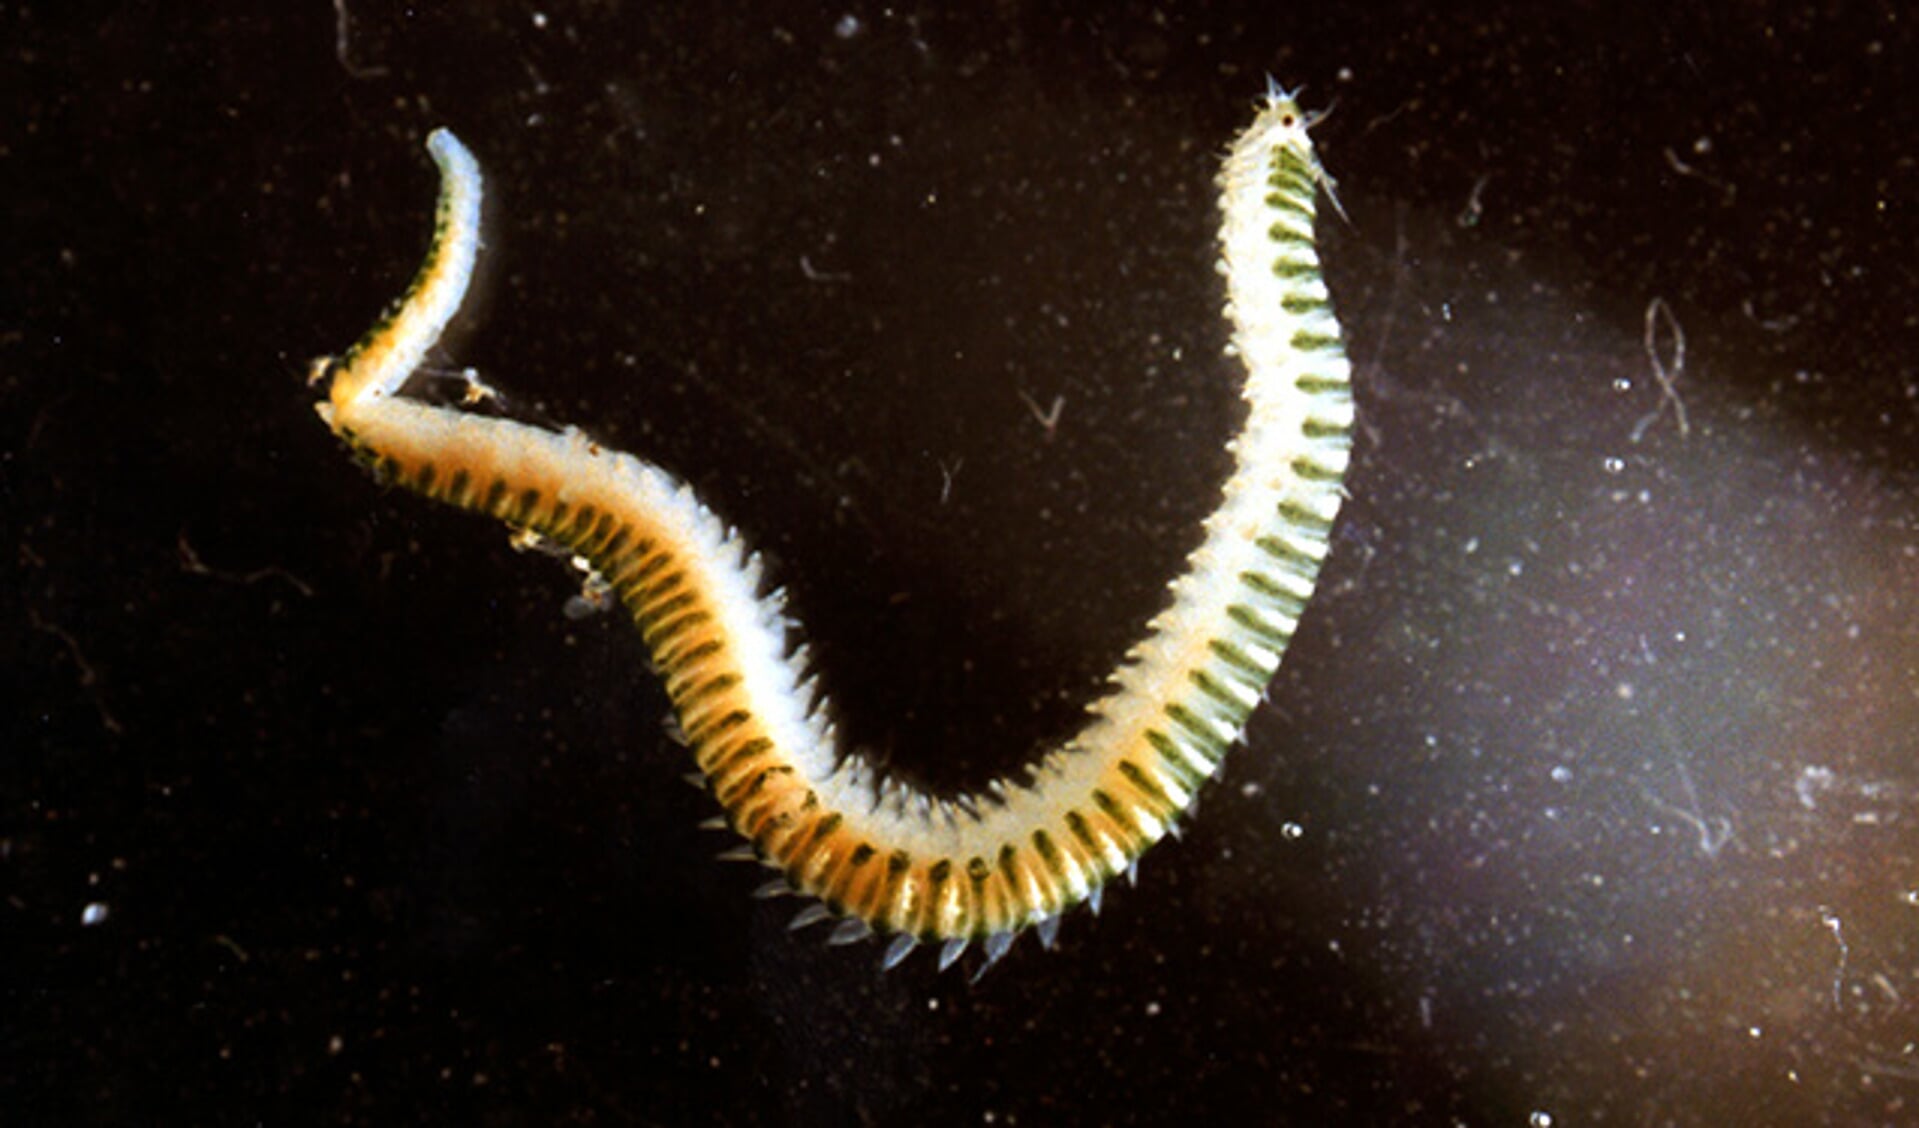 De borstelworm is een van de vele diersoorten die in de wadbodem leven